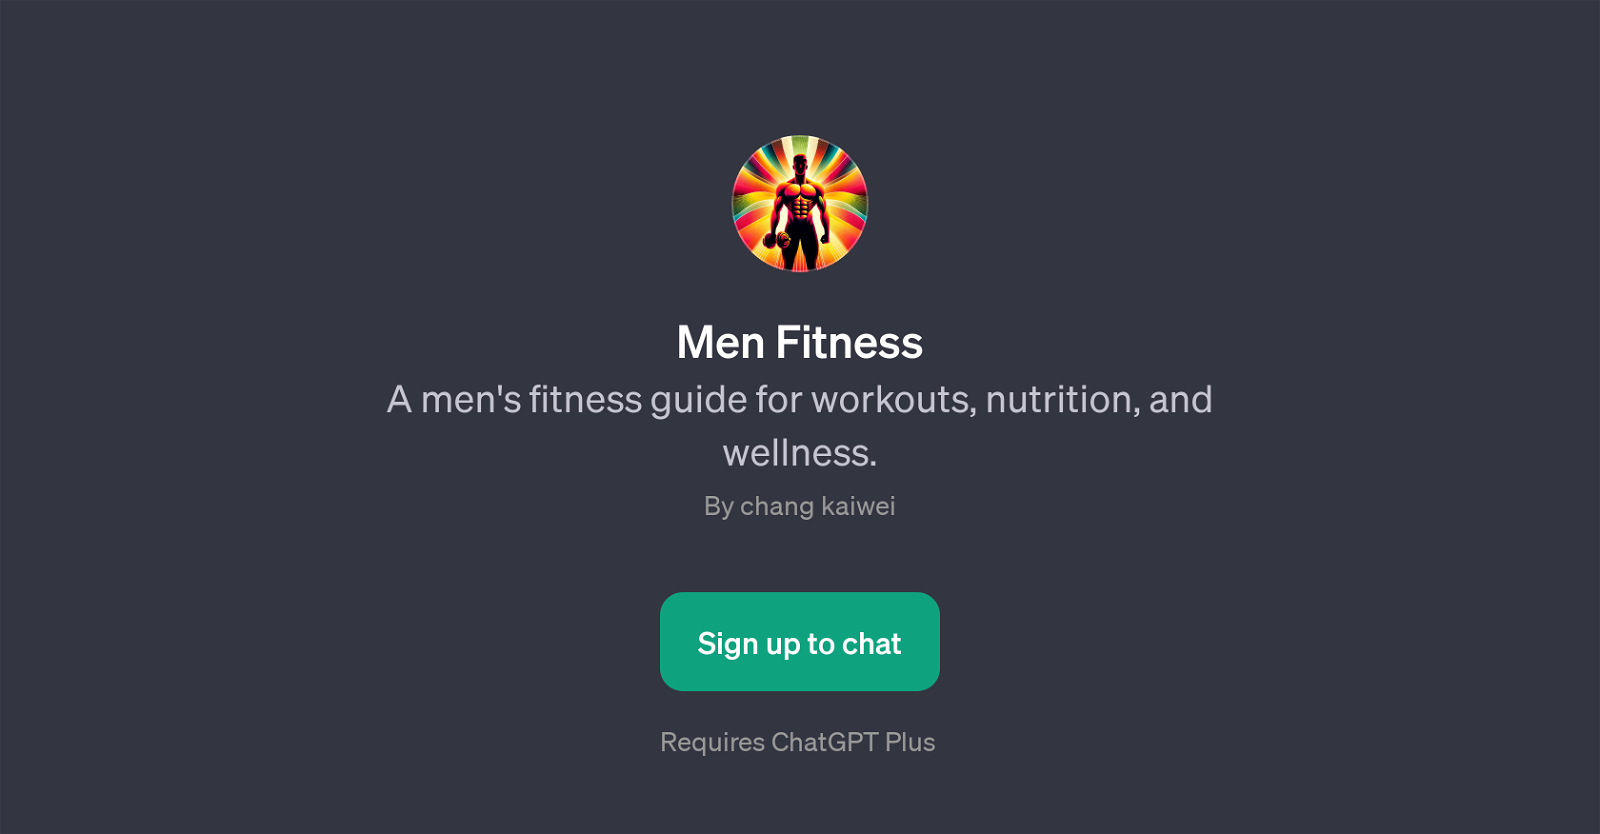 Men Fitness website